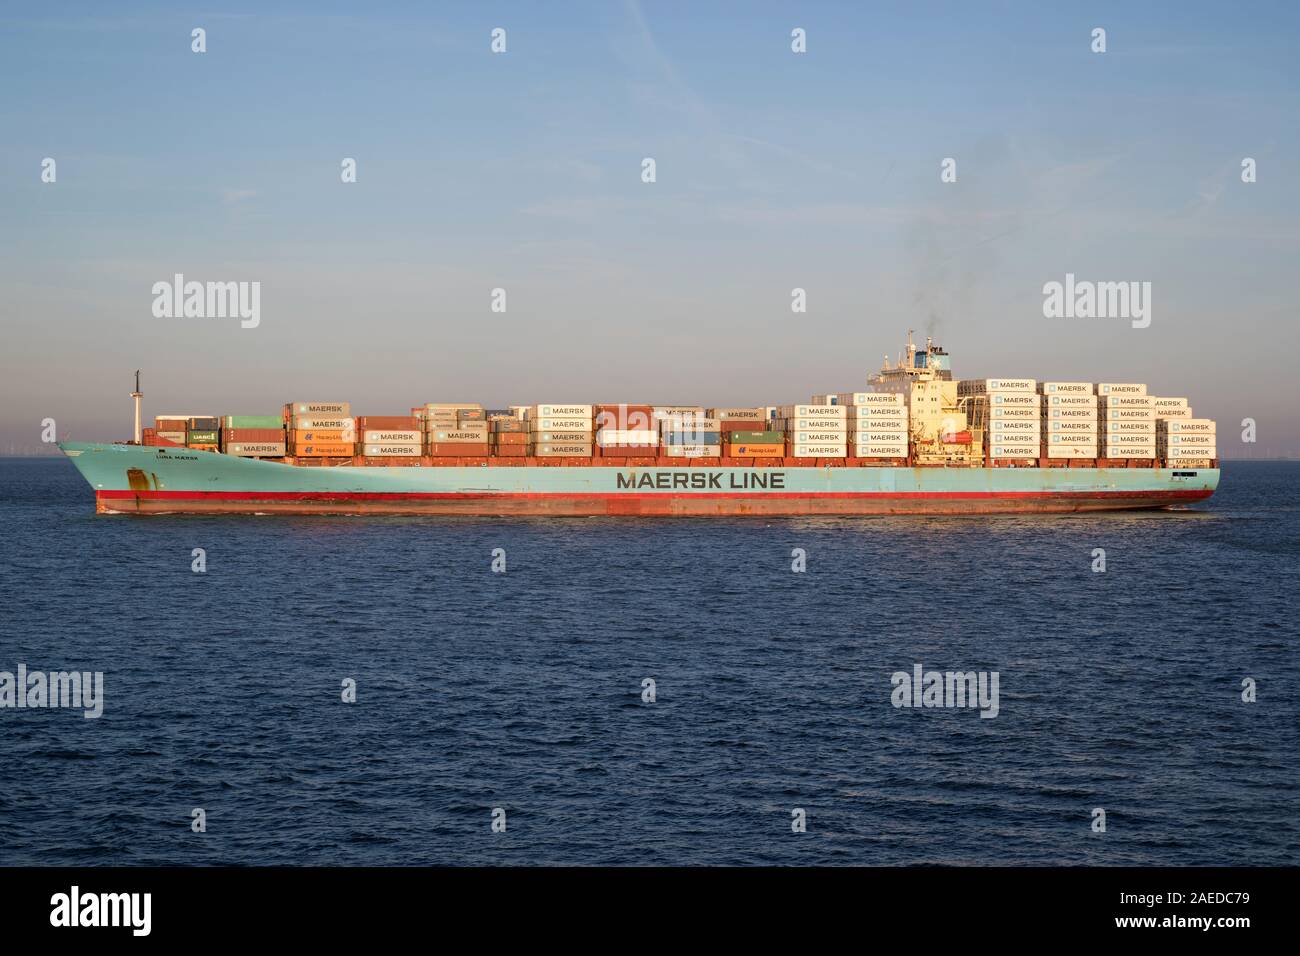 LUNA MAERSK sur l'Elbe. Maersk est le plus grand exploitant de navires à conteneurs dans le monde. Banque D'Images